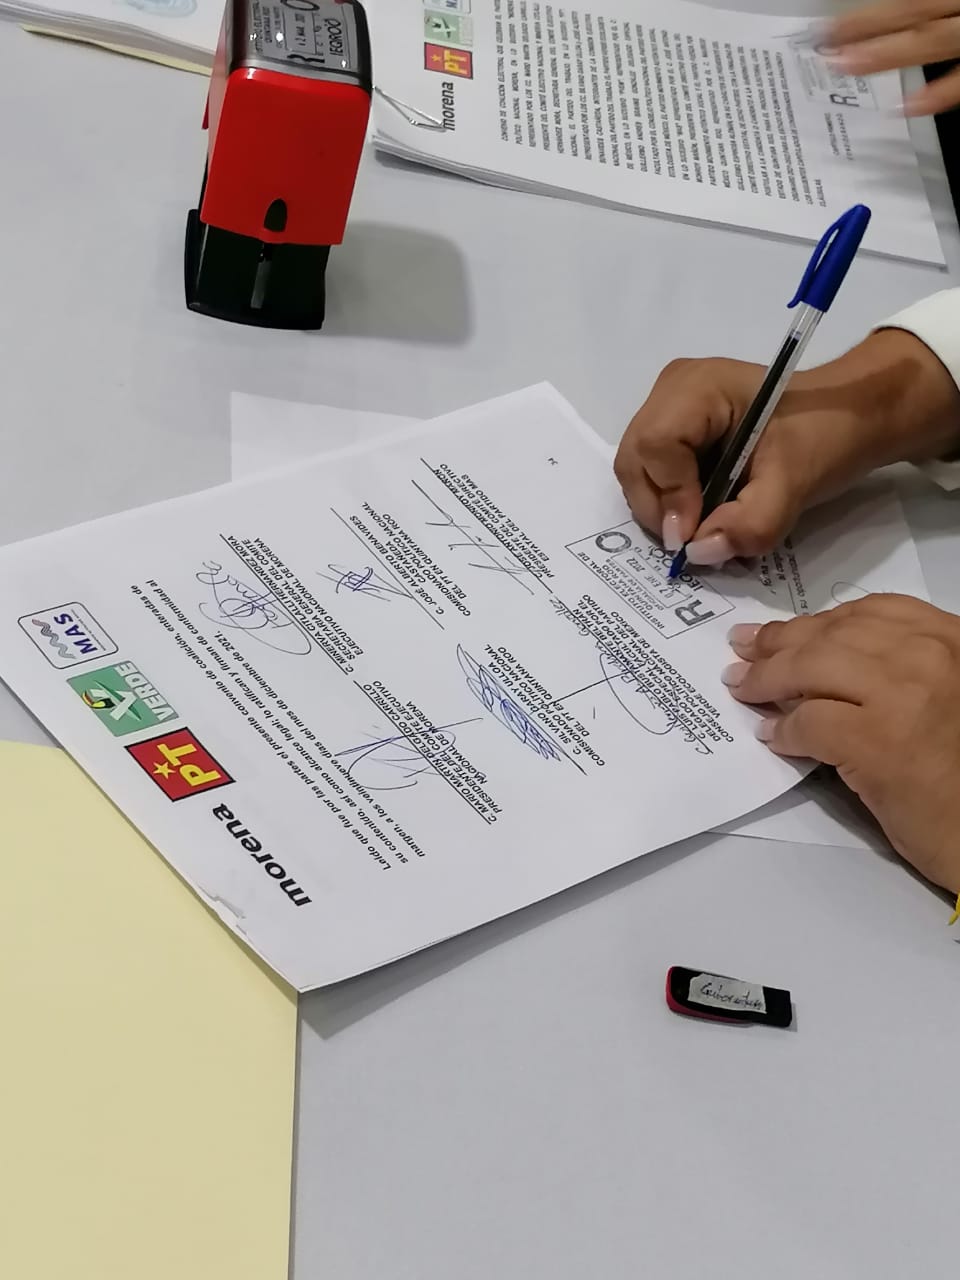 Morena encabezará candidaturas en ocho municipios de Quintana Roo